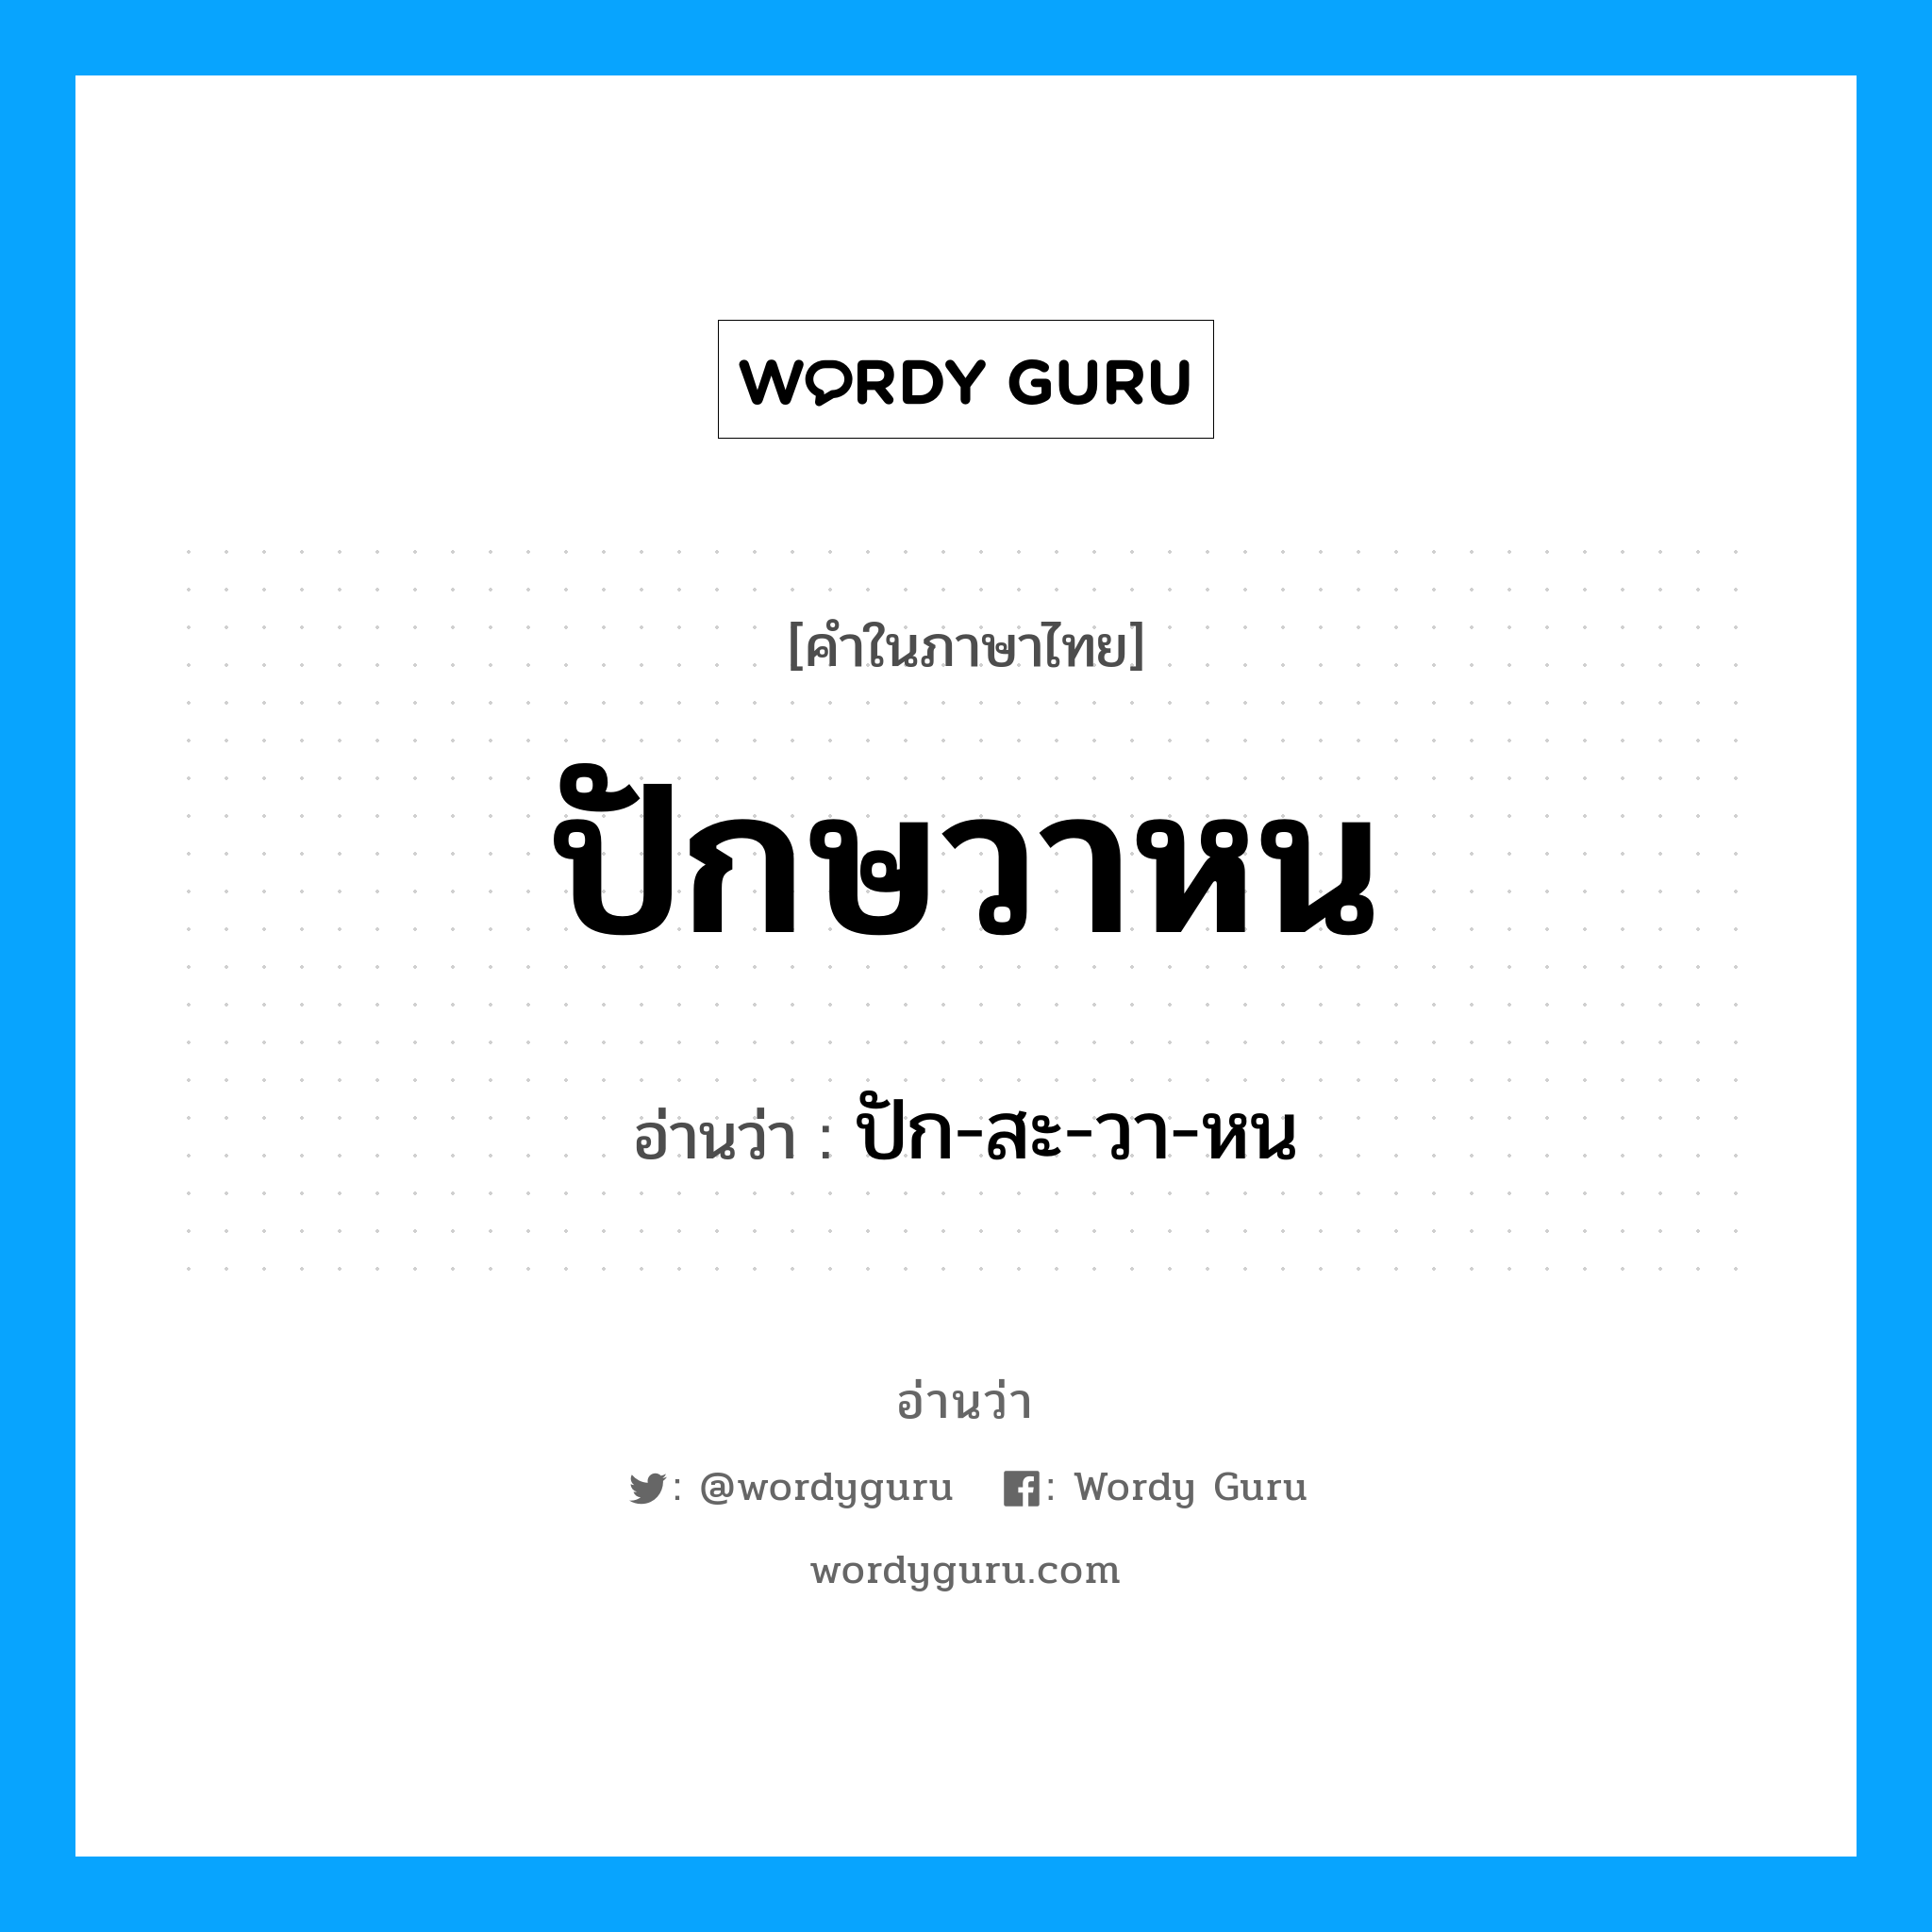 ปัก-สะ-วา-หน เป็นคำอ่านของคำไหน?, คำในภาษาไทย ปัก-สะ-วา-หน อ่านว่า ปักษวาหน